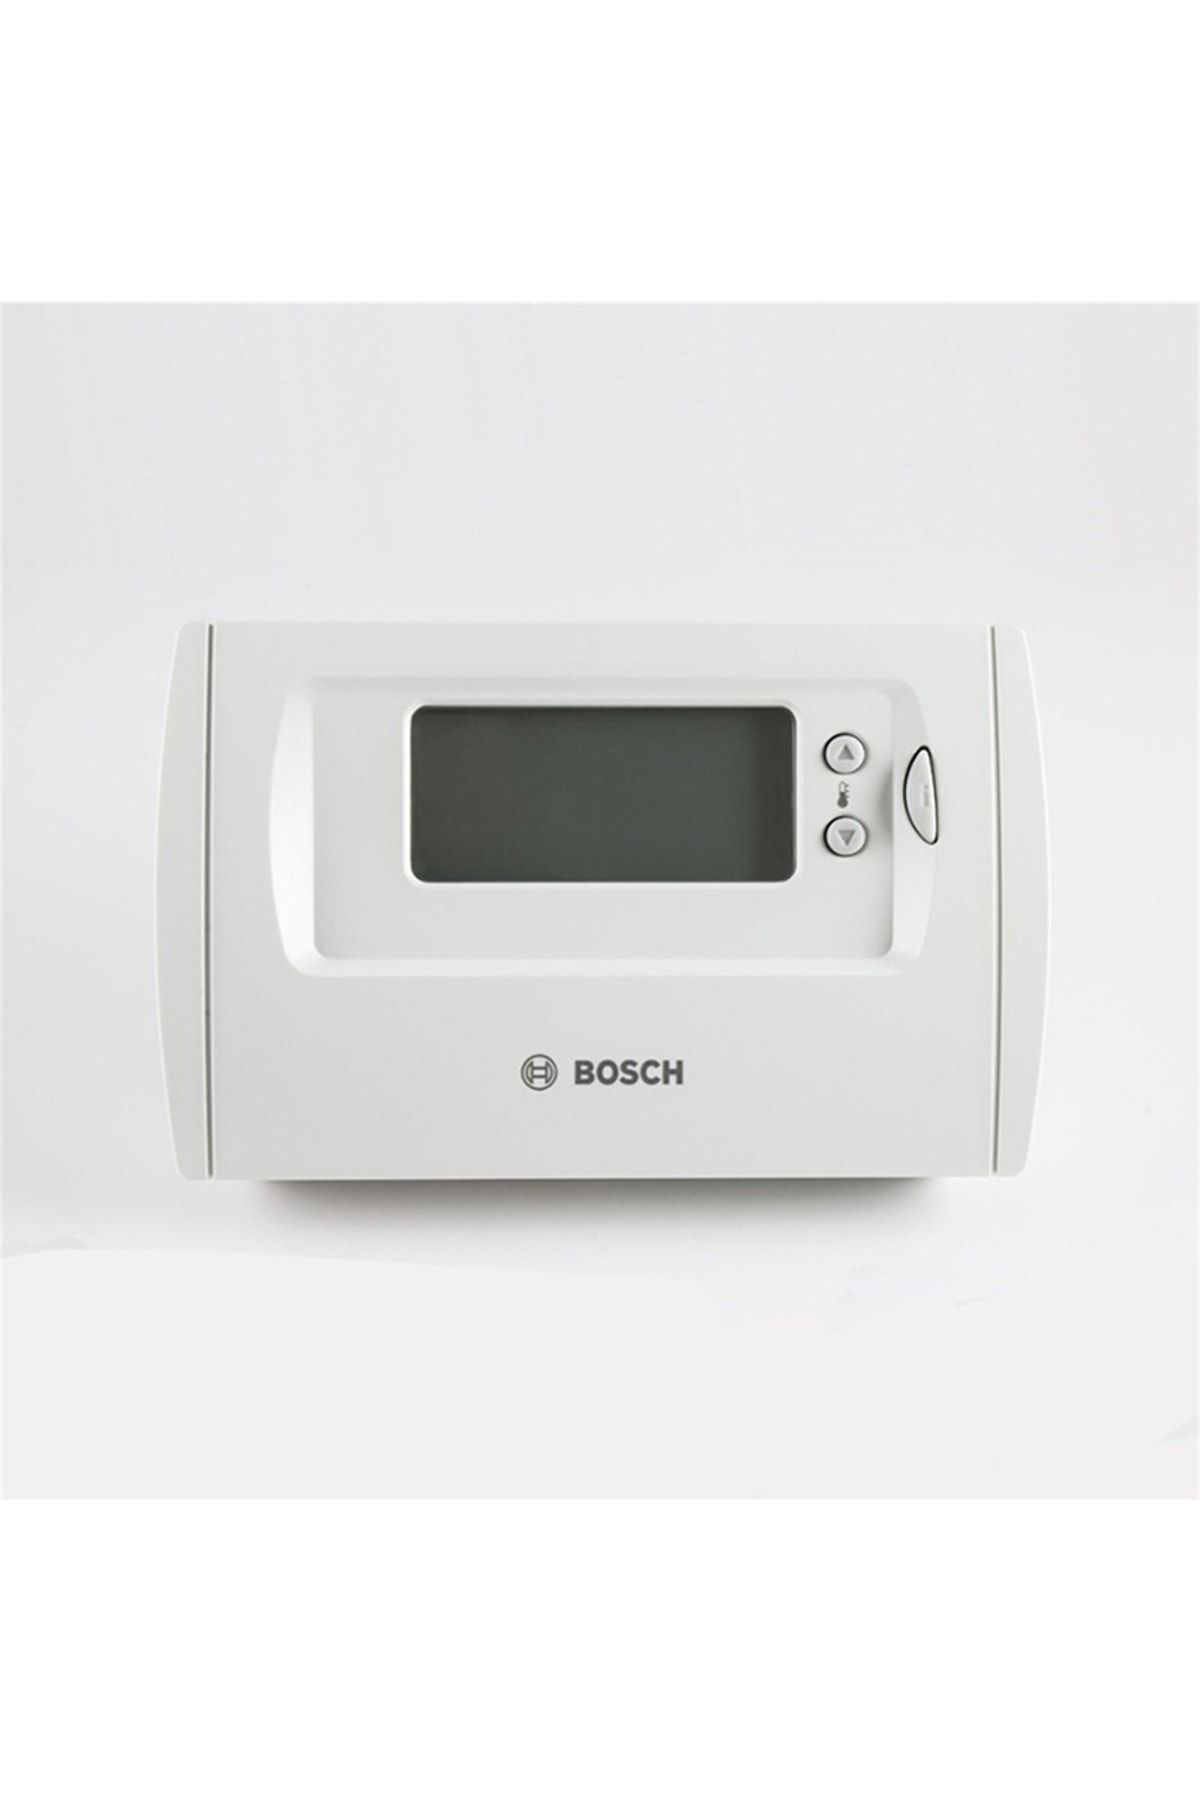 Bosch Tr 36 Rf Kablosuz Programlanabilir Oda Termostatı